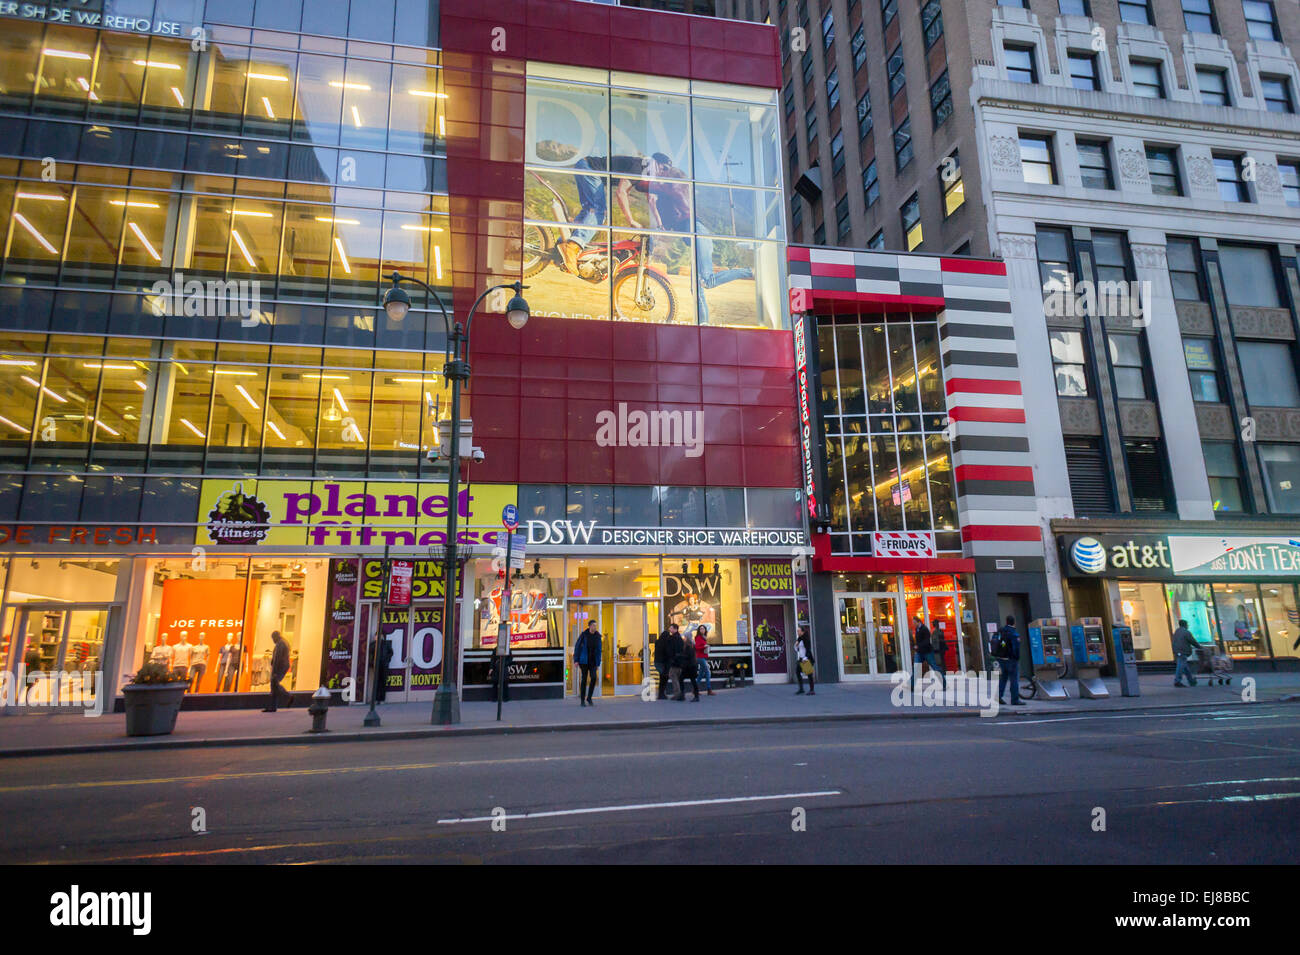 Un magasin de chaussures DSW à Herald Square à New York le Mardi, Mars 17, 2015. Le cordonnier a dépassé les attentes des analystes en montrant une augmentation des ventes de 7,6  % dans son quatrième trimestre. La chaîne exploite 433 magasins aux Etats-Unis (© Richard B. Levine) Banque D'Images